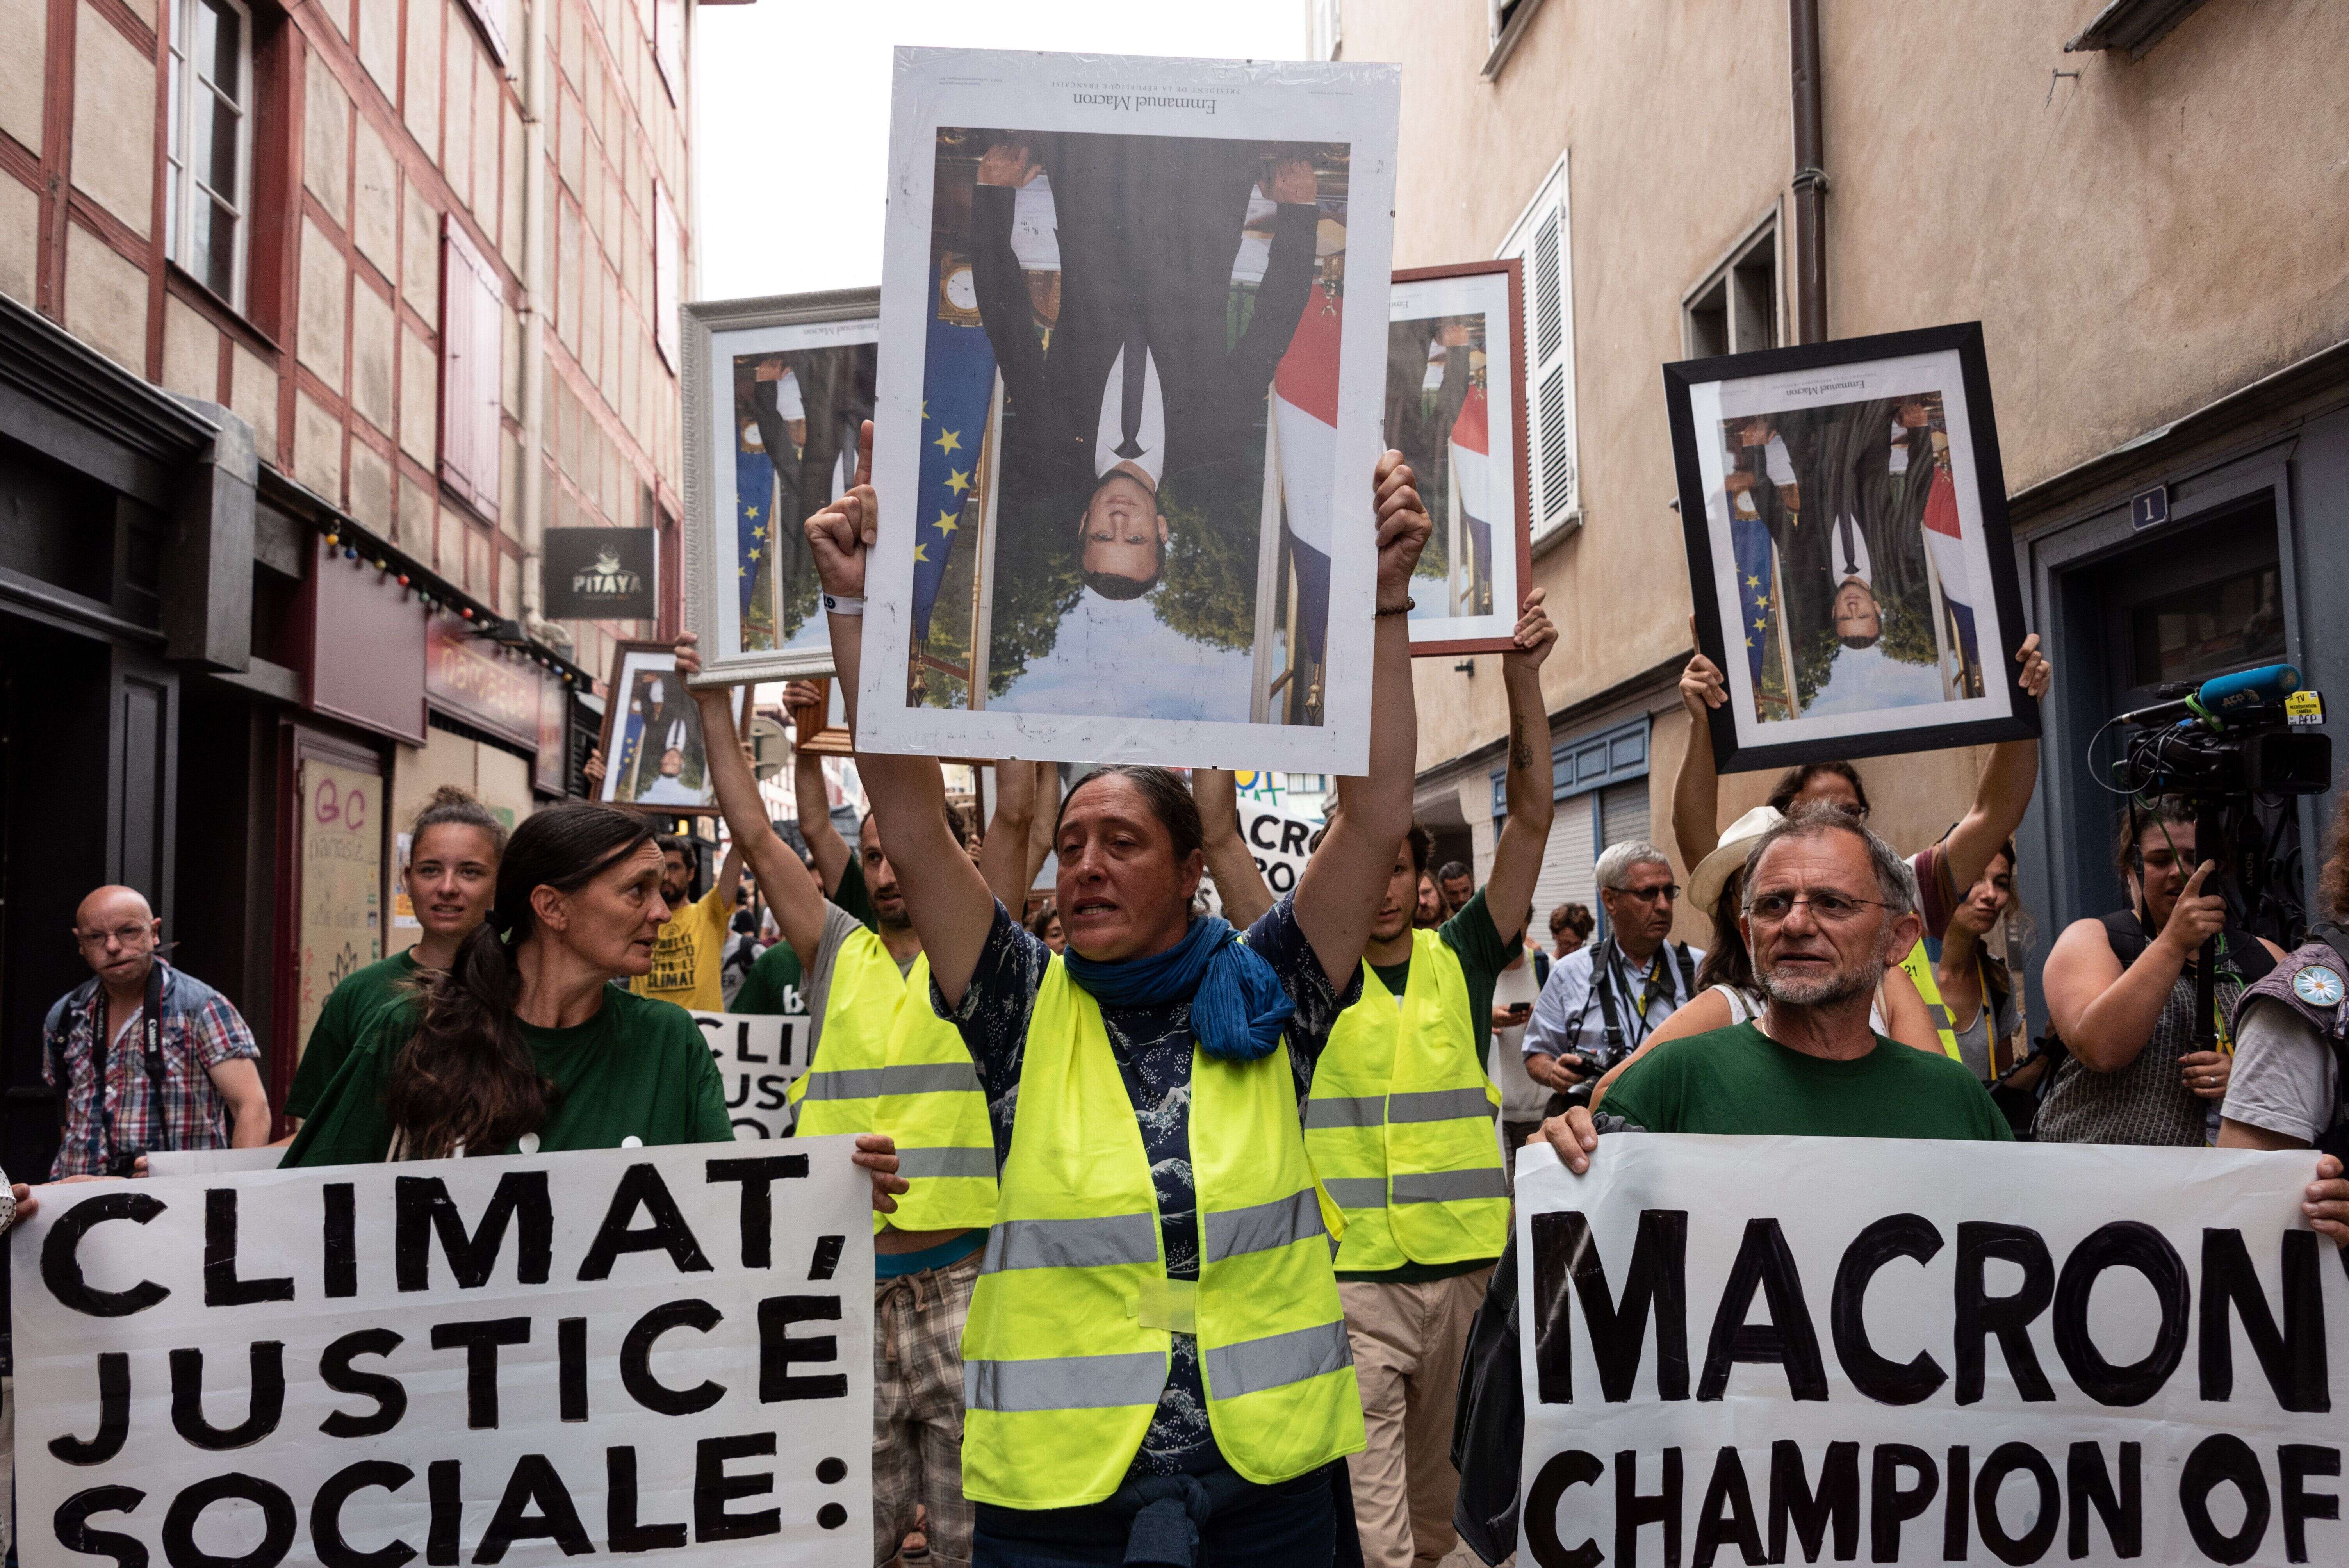 De nombreux militants pro-climat défilent des mois avec des portraits volés d'Emmanuel Macron pour réclamer davantage d'action de la part du gouvernement en faveur de l'environnement.